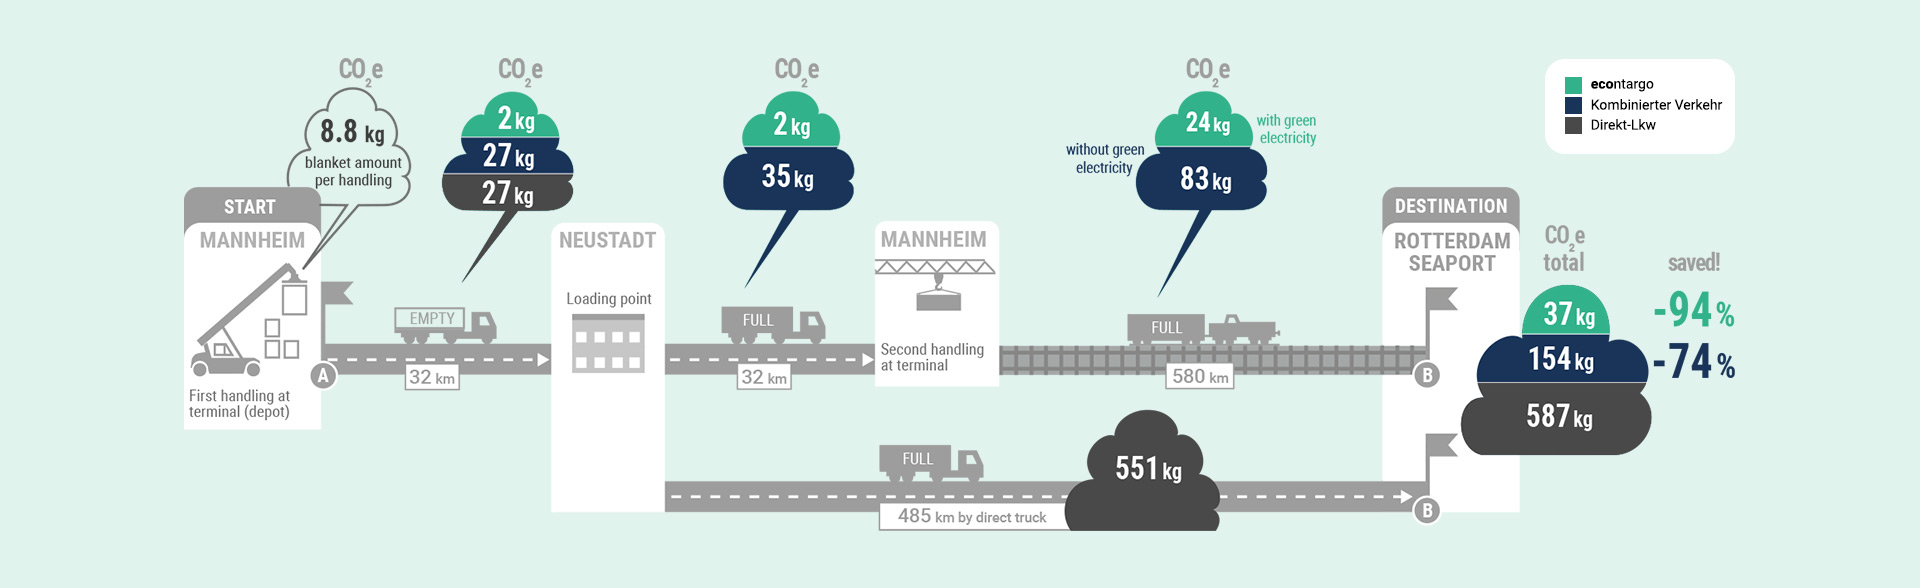 Grafik: econtargo im Vergleich: CO2e-Berechnung am Beispiel Mannheim-Rotterdam